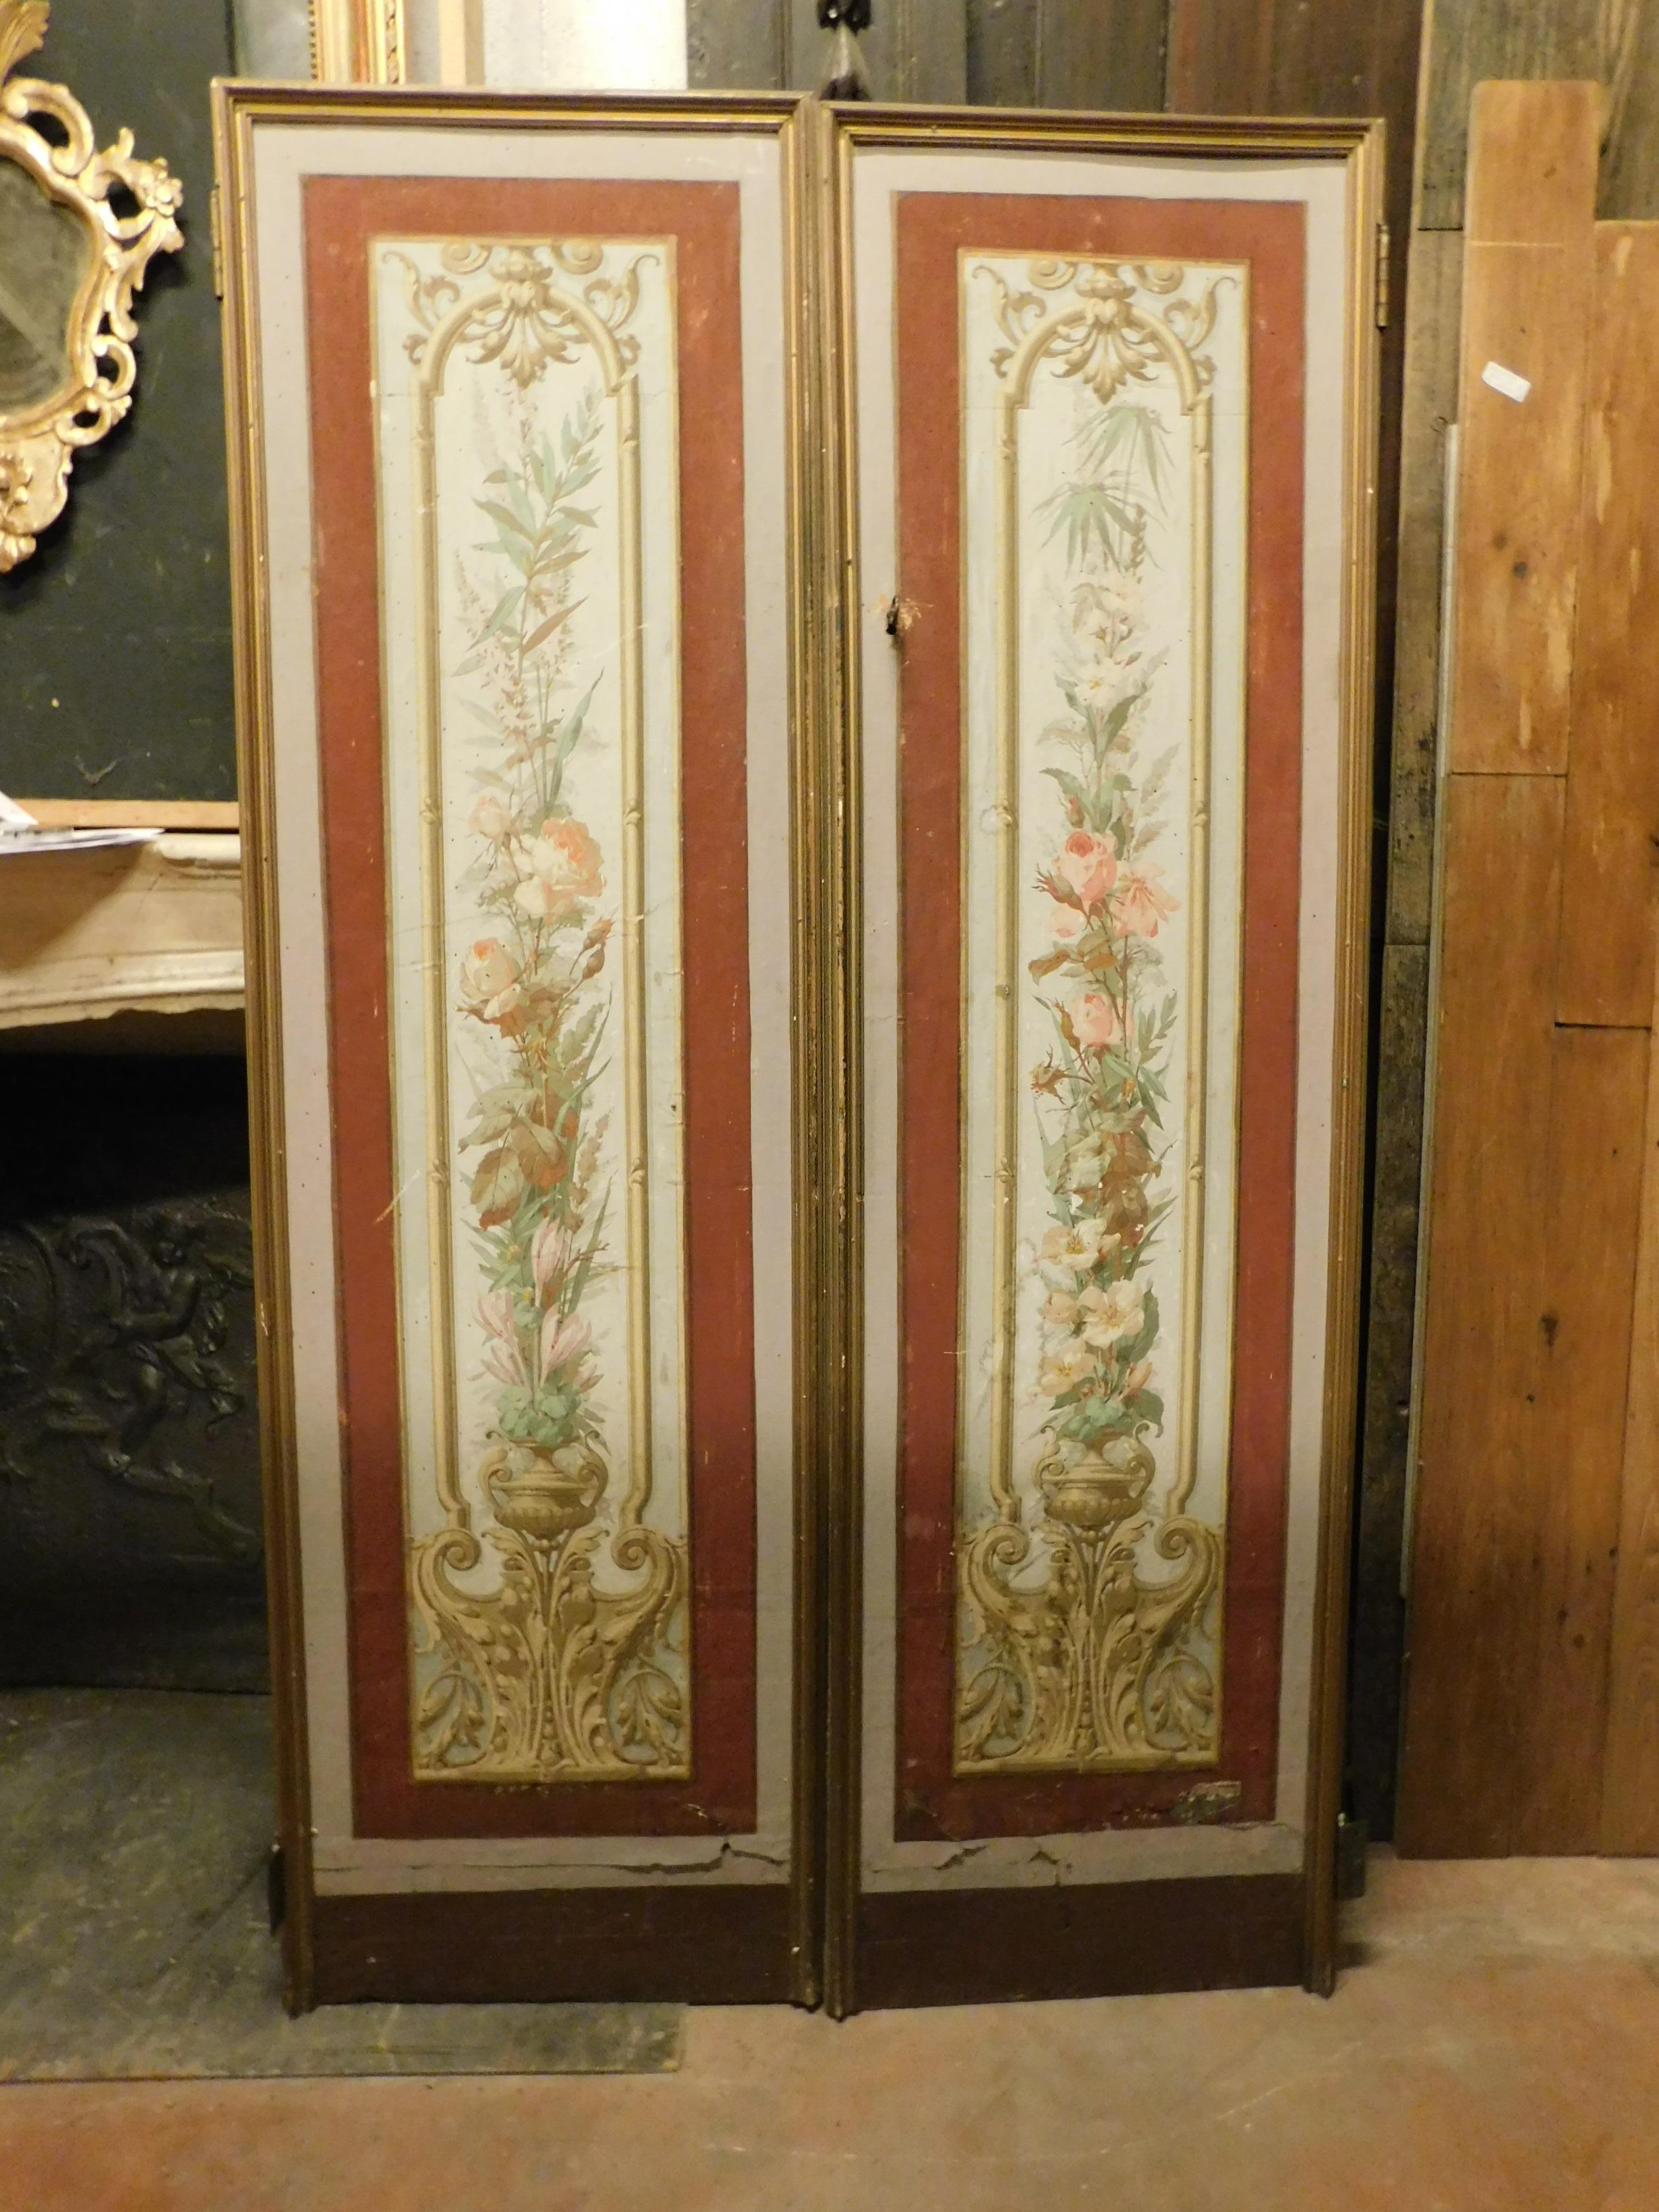 Paar lackierte und bemalte Vintage-Türen mit Blumenmotiven, die typisch für den Jugendstil sind, aus den frühen 1900er Jahren, handgefertigt in Italien.
Sie haben Zugscharniere, stammen also wahrscheinlich aus einem Einbauschrank, in gutem Zustand